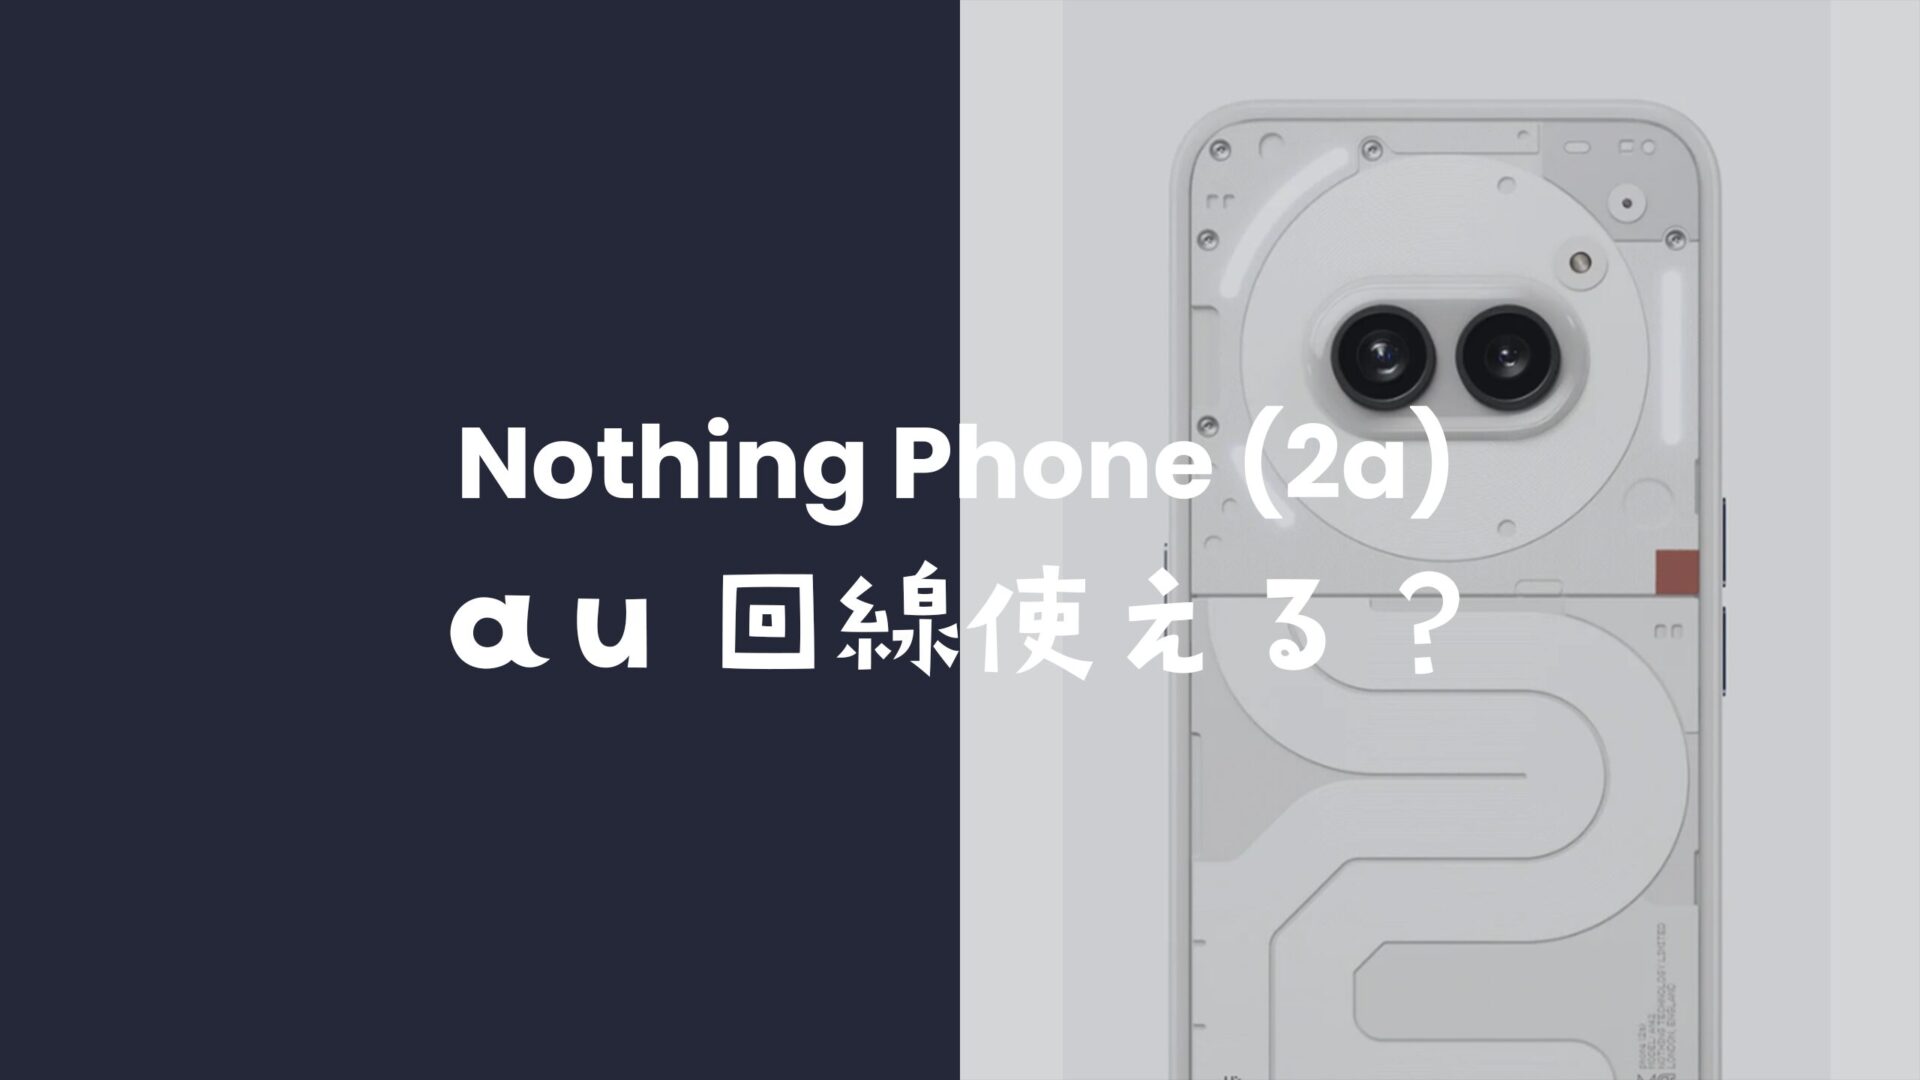 ナッシングフォン(2a)はauで発売？au回線で利用可能なのか？のサムネイル画像